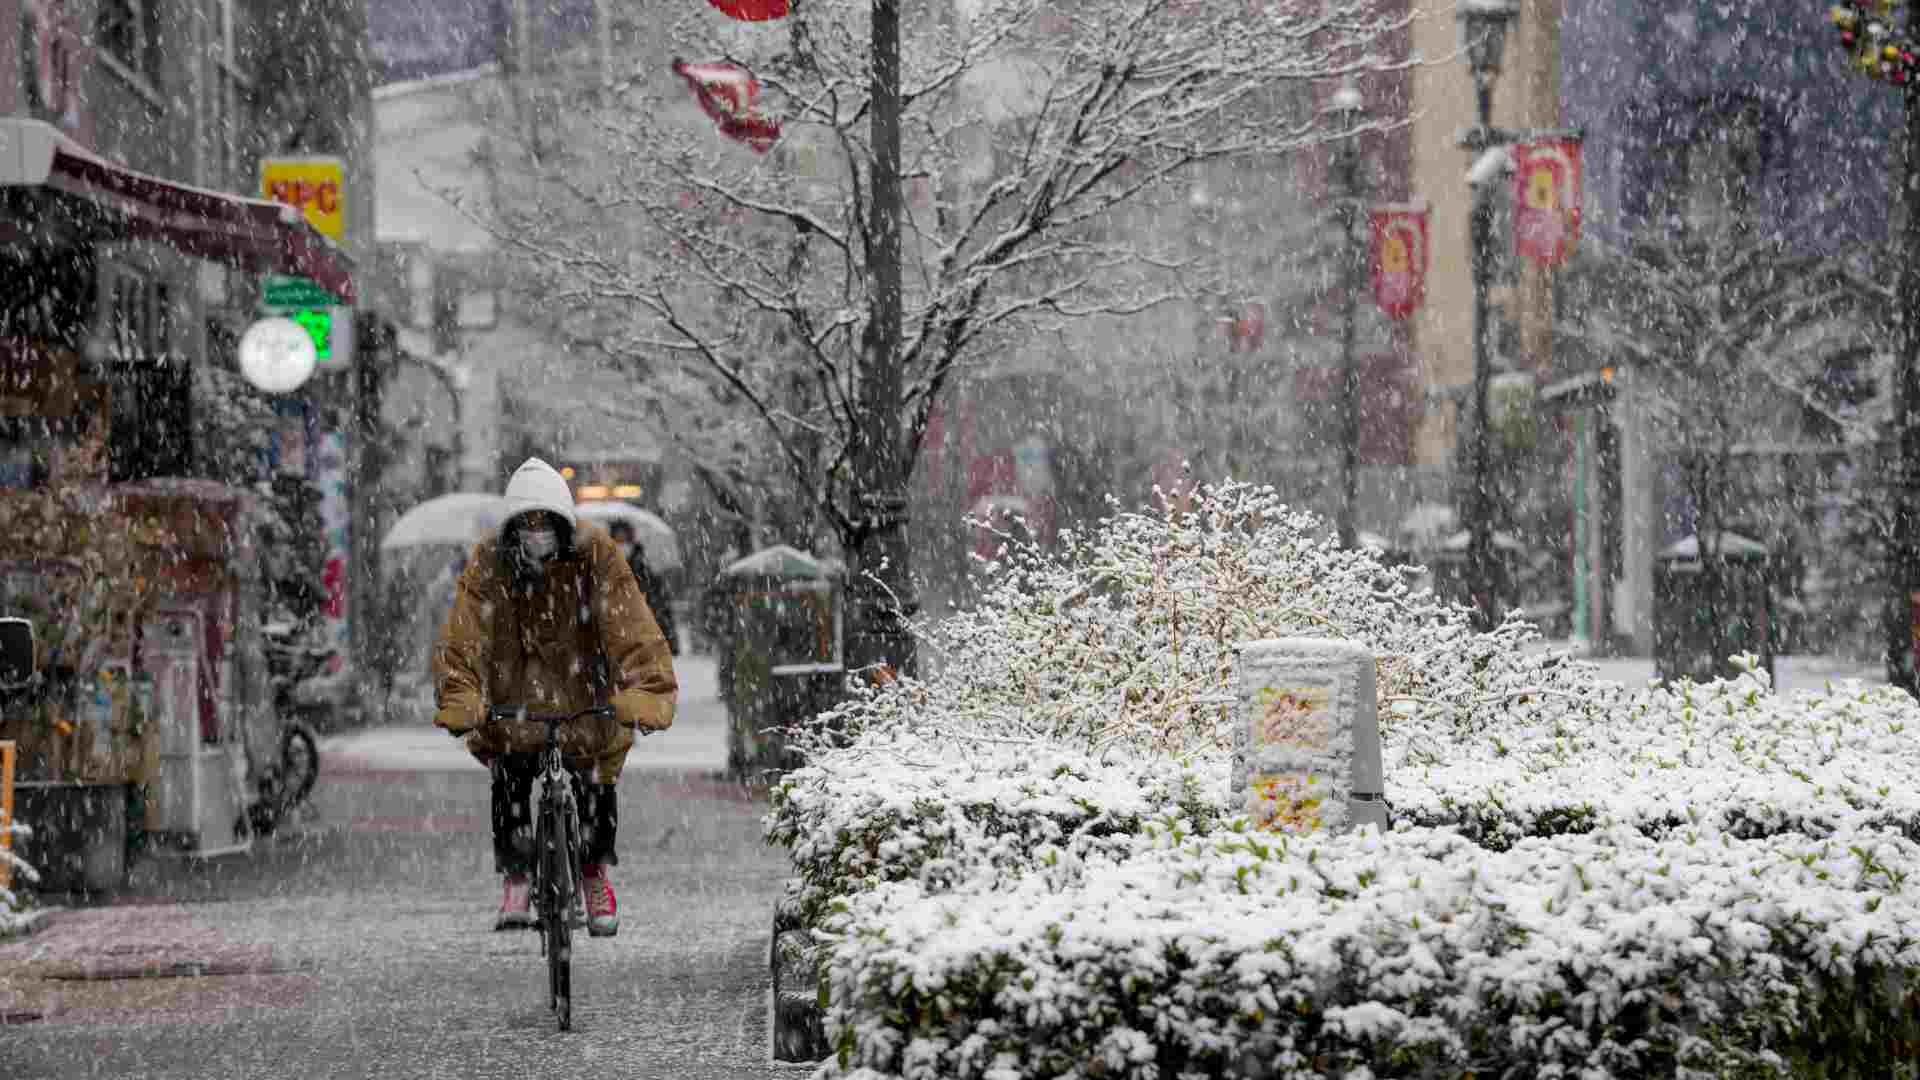 La Temporada De Clima Frío En Japón. Fotos, retratos, imágenes y